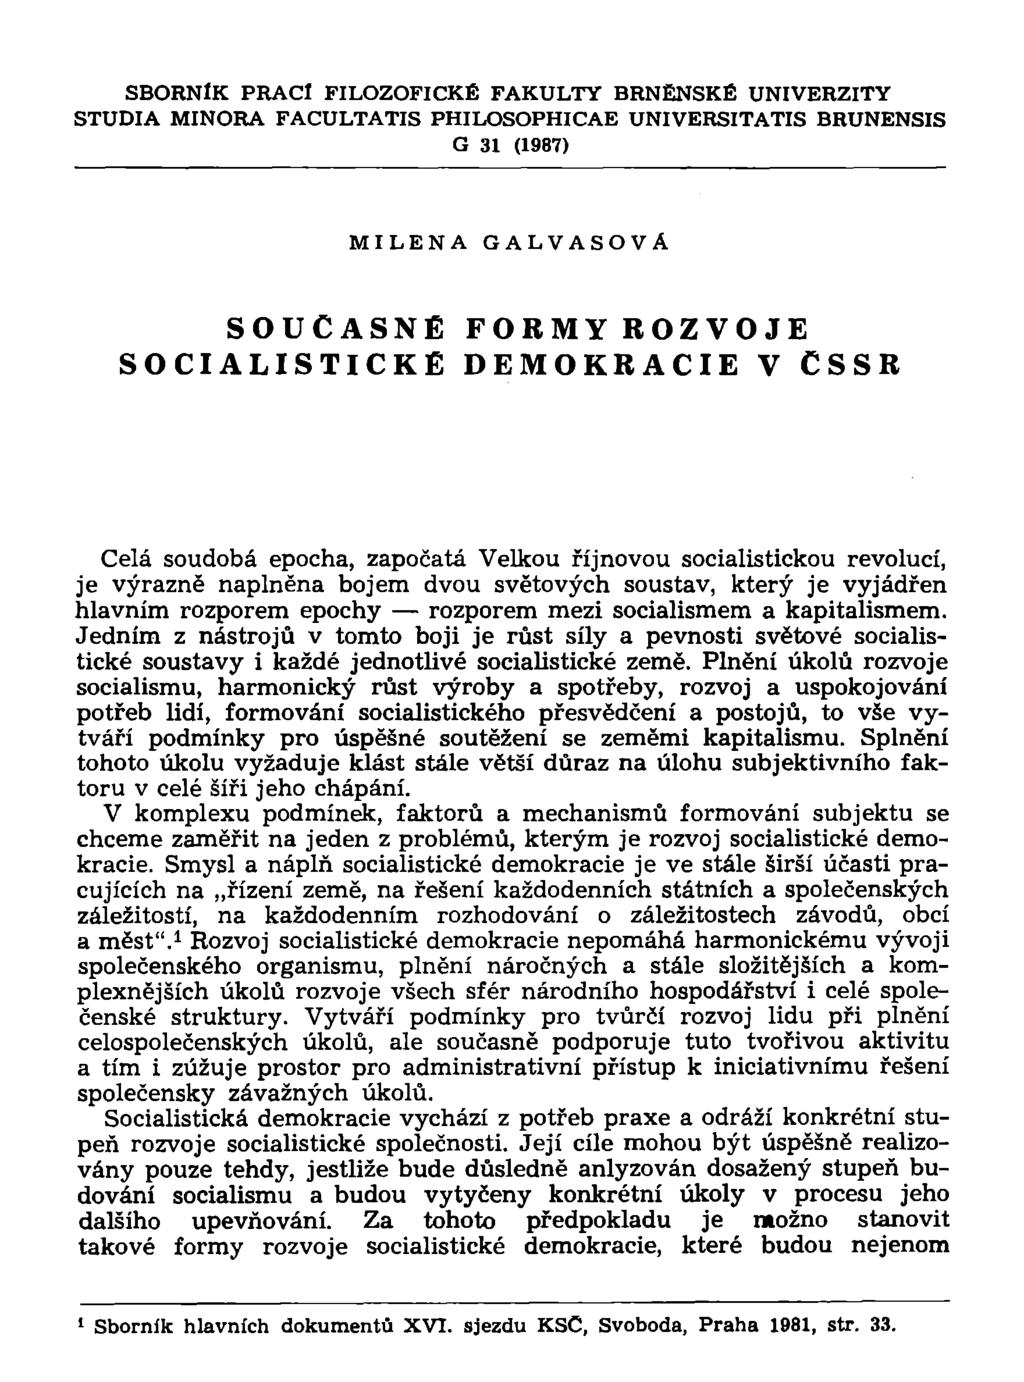 SBORNÍK PRACÍ FILOZOFICKÉ FAKULTY BRNĚNSKÉ UNIVERZITY STUDIA MINORA FACULTATIS PHILOSOPHICAE UNIVERSITATIS BRUNENSIS G 31 (1987) MILENA GALVASOVÁ SOUČASNÉ SOCIALISTICKÉ FORMY ROZVOJE DEMOKRACIE V